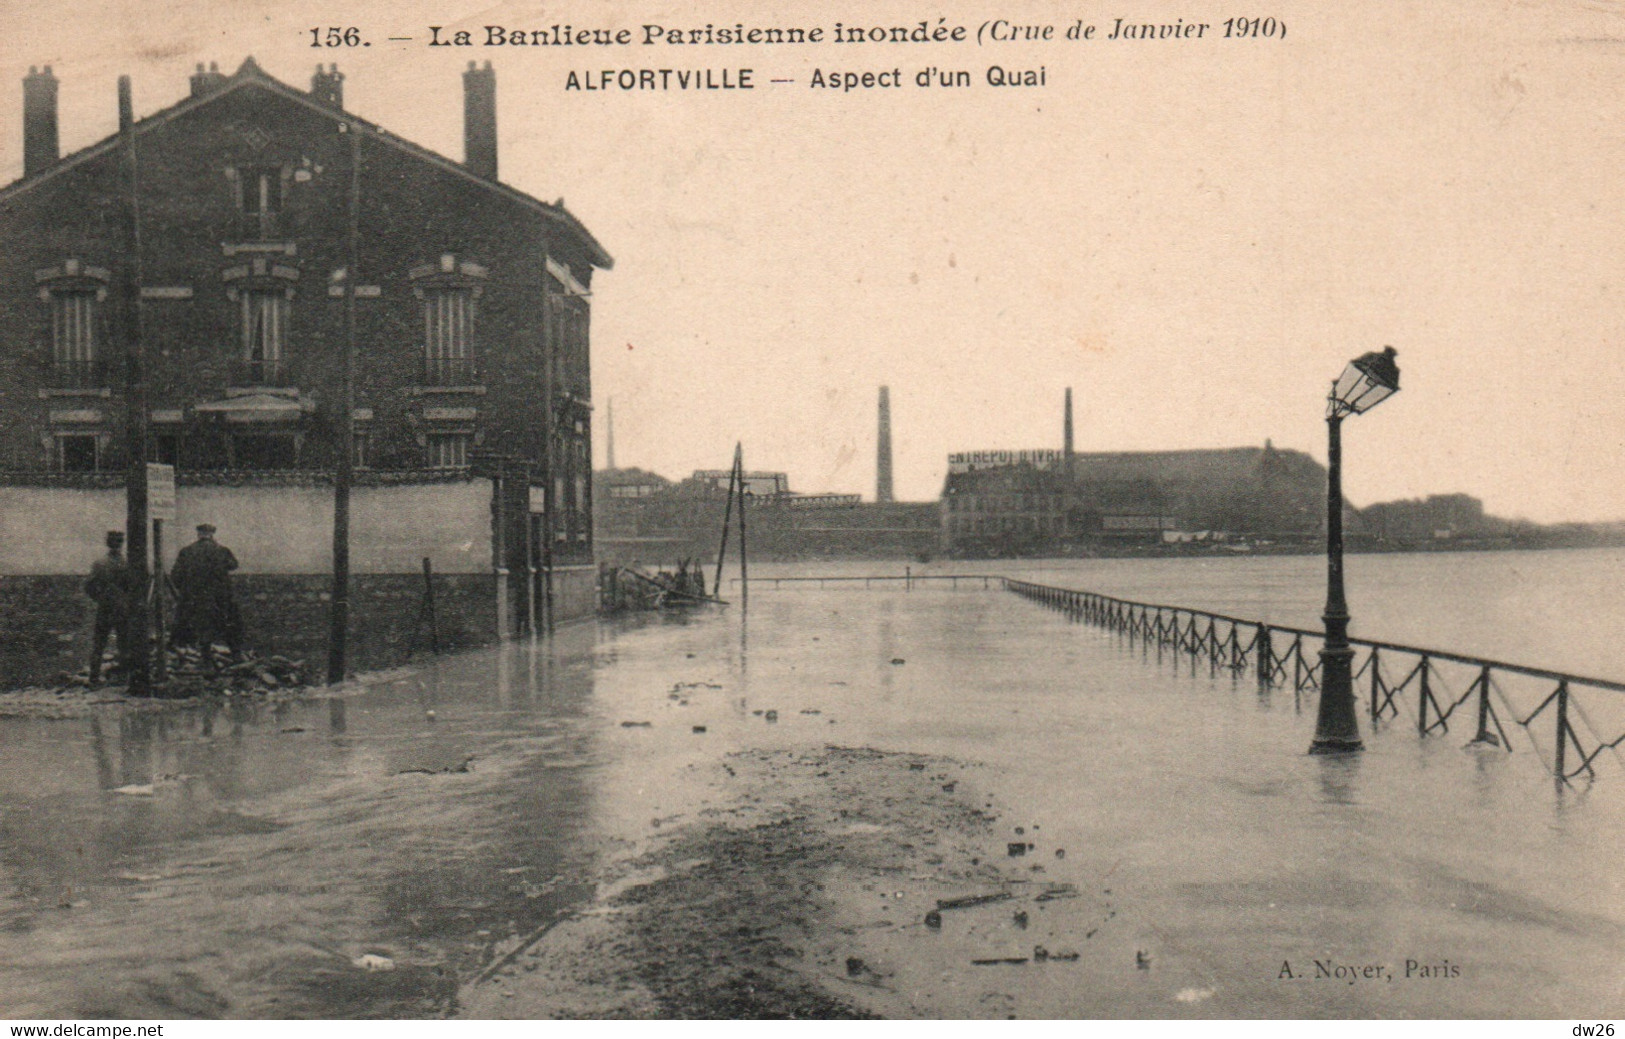 La Banlieue Parisienne Inondée: Crue De Janvier 1910 - Alfortville: Aspect D'un Quai - Carte Noyer N° 156 Non Circulée - Inondations